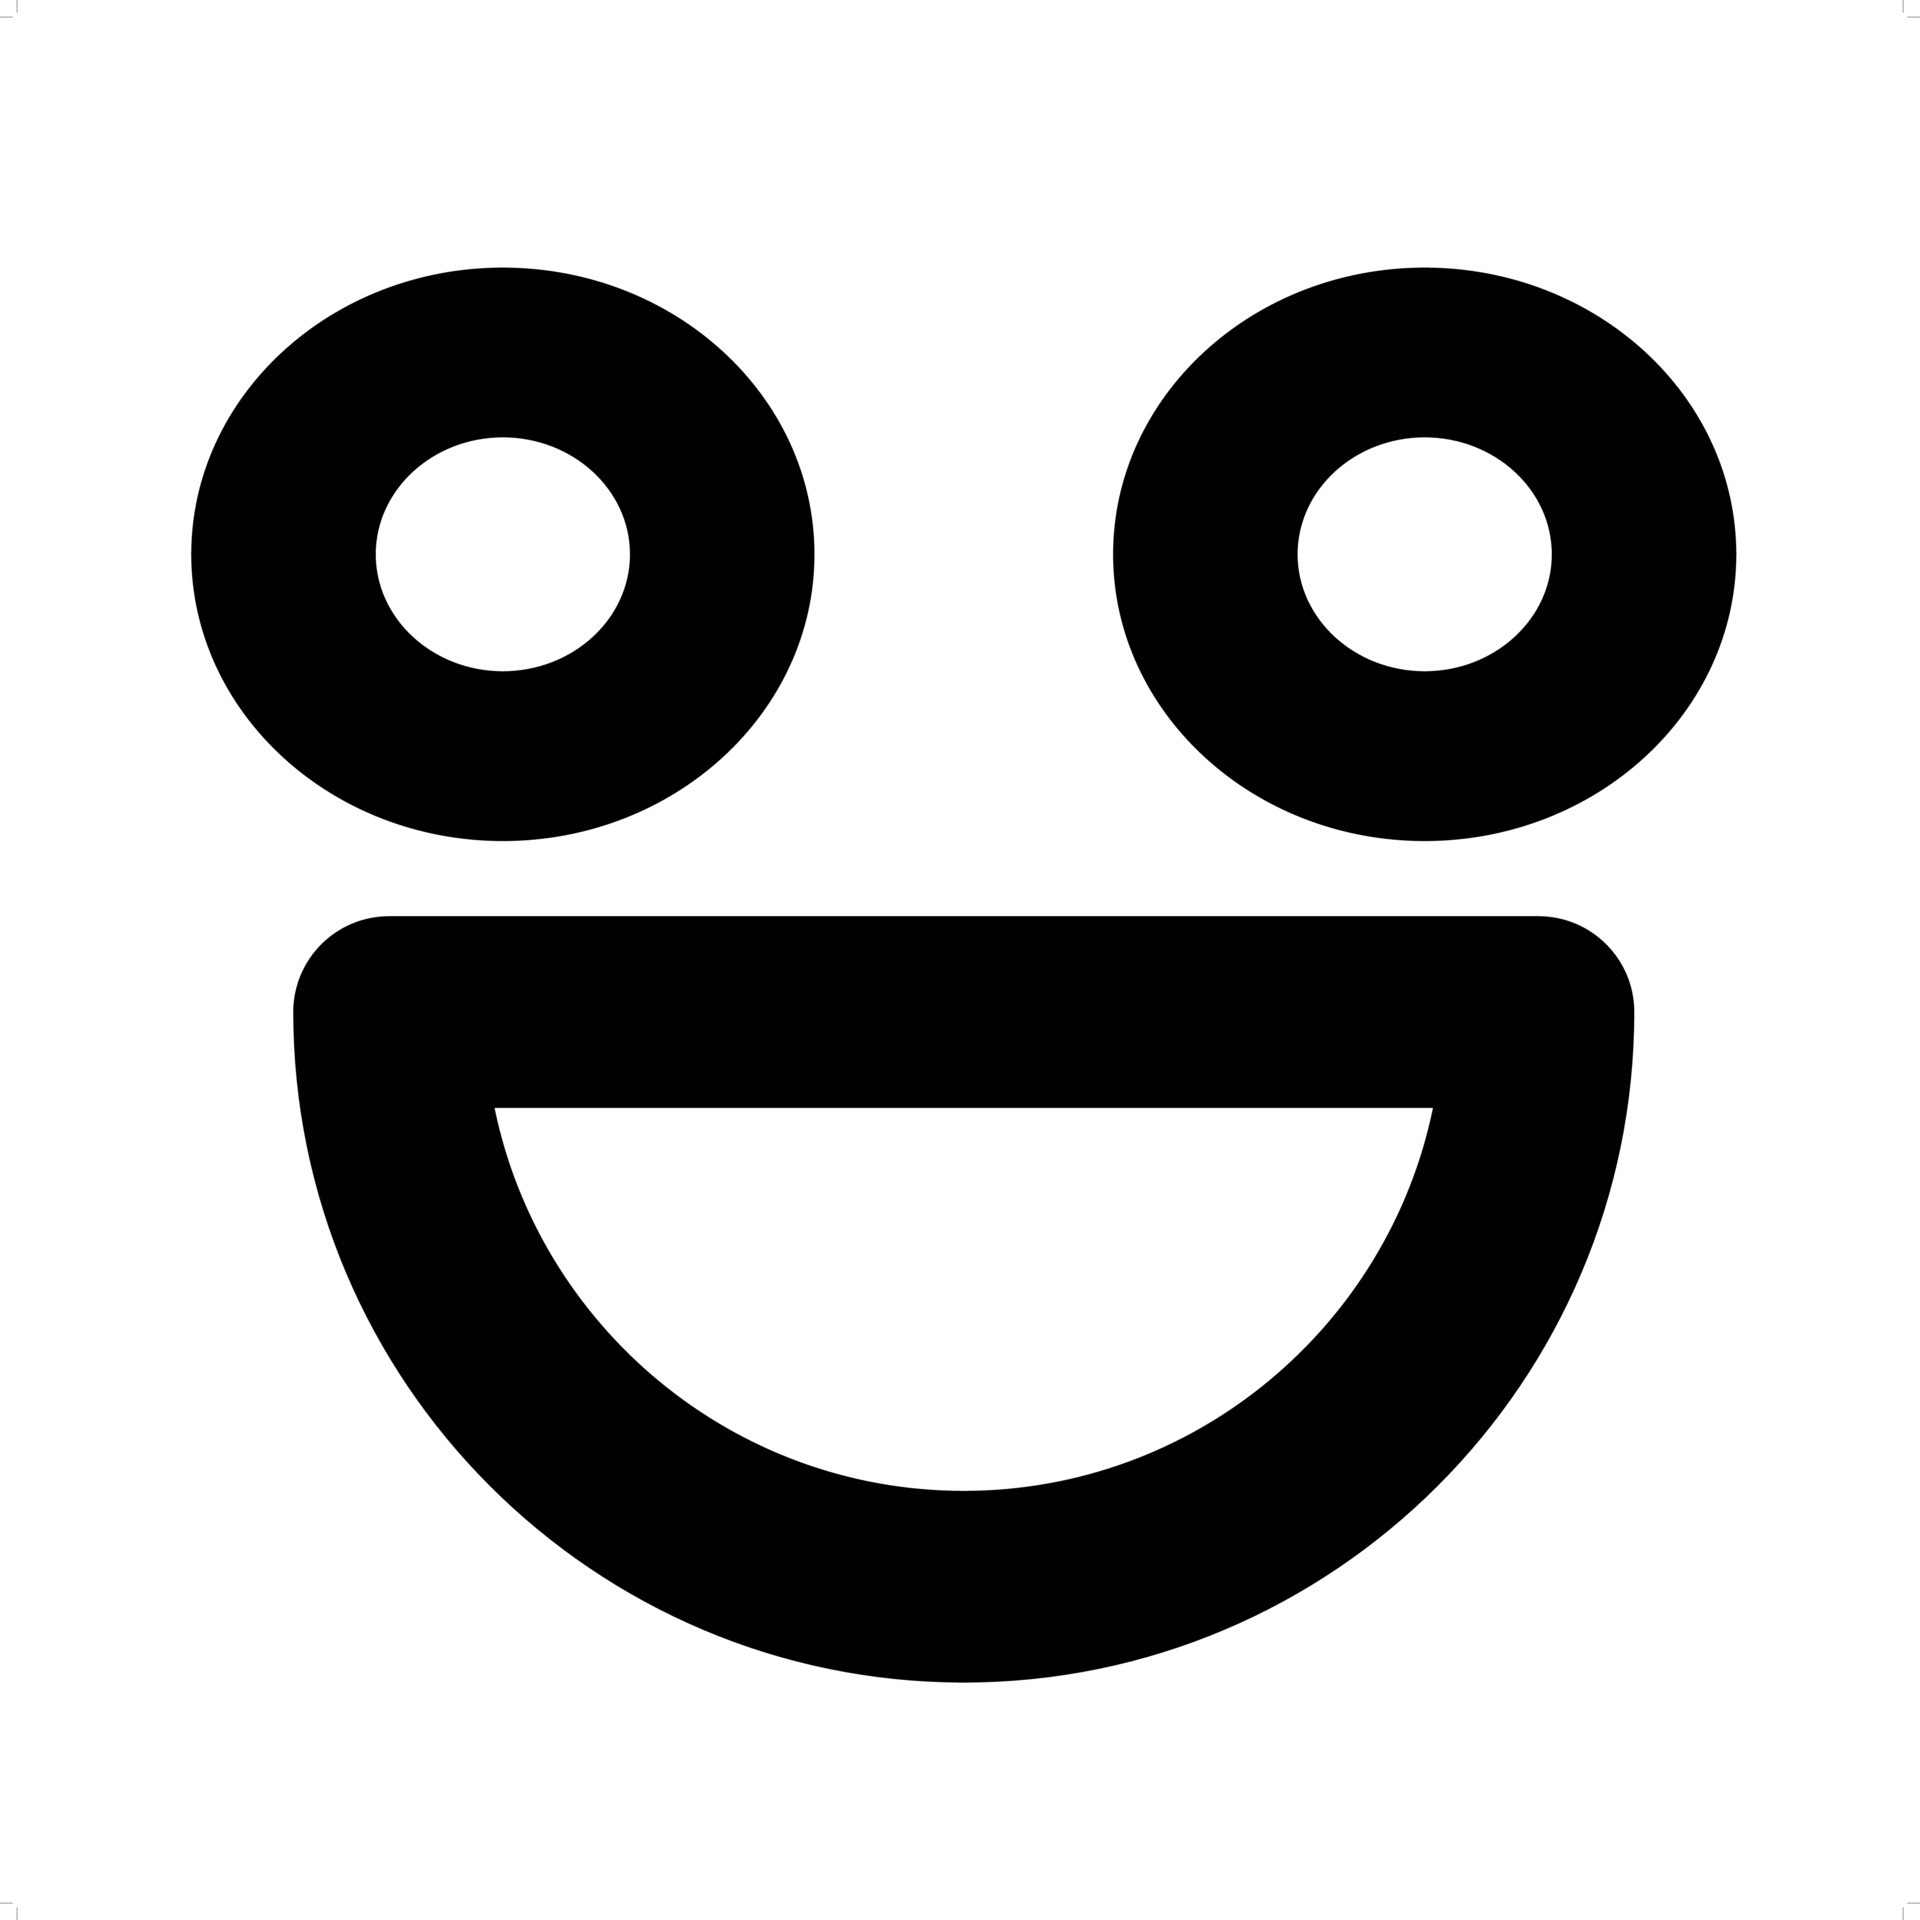 Super super happy face - Roblox